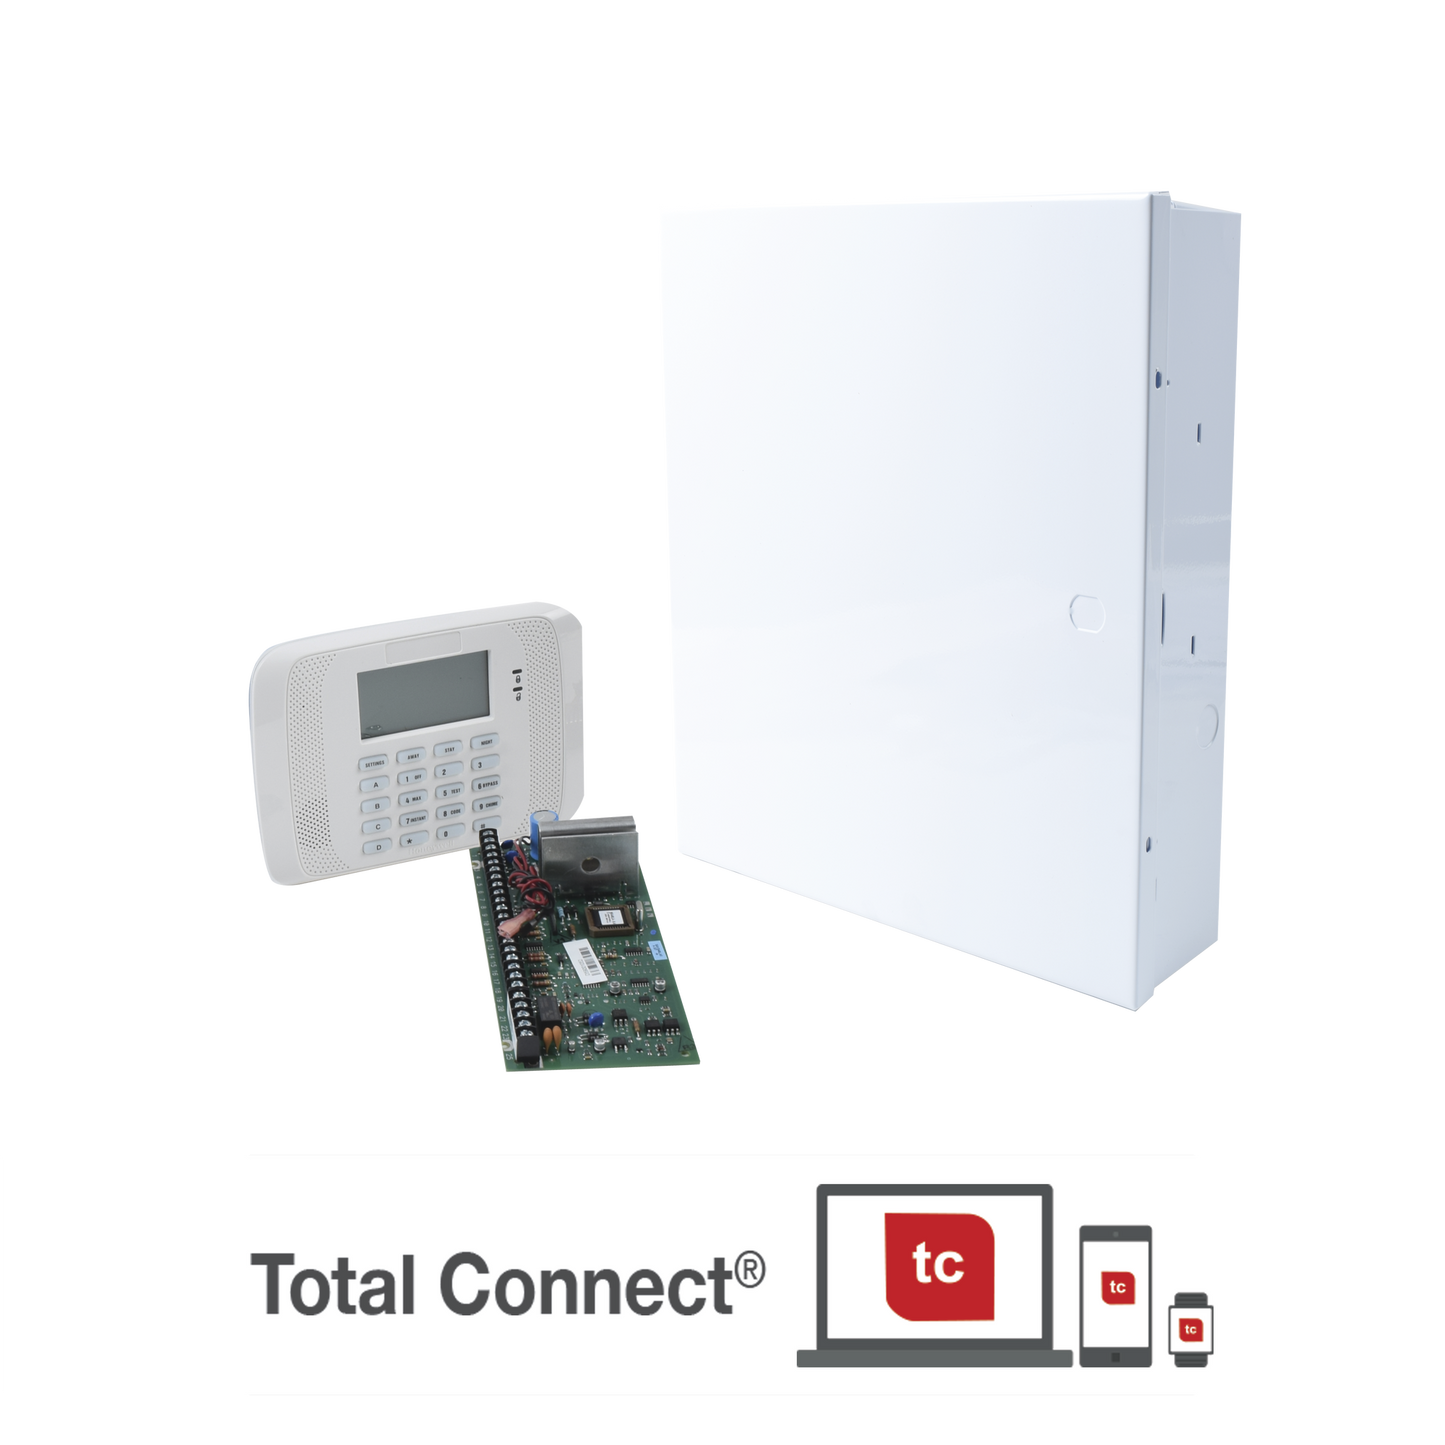 Sistema de Alarma de 8 Zonas con Teclado LCD Alfanumerico y Receptor Inalambrico para 40 Sensores